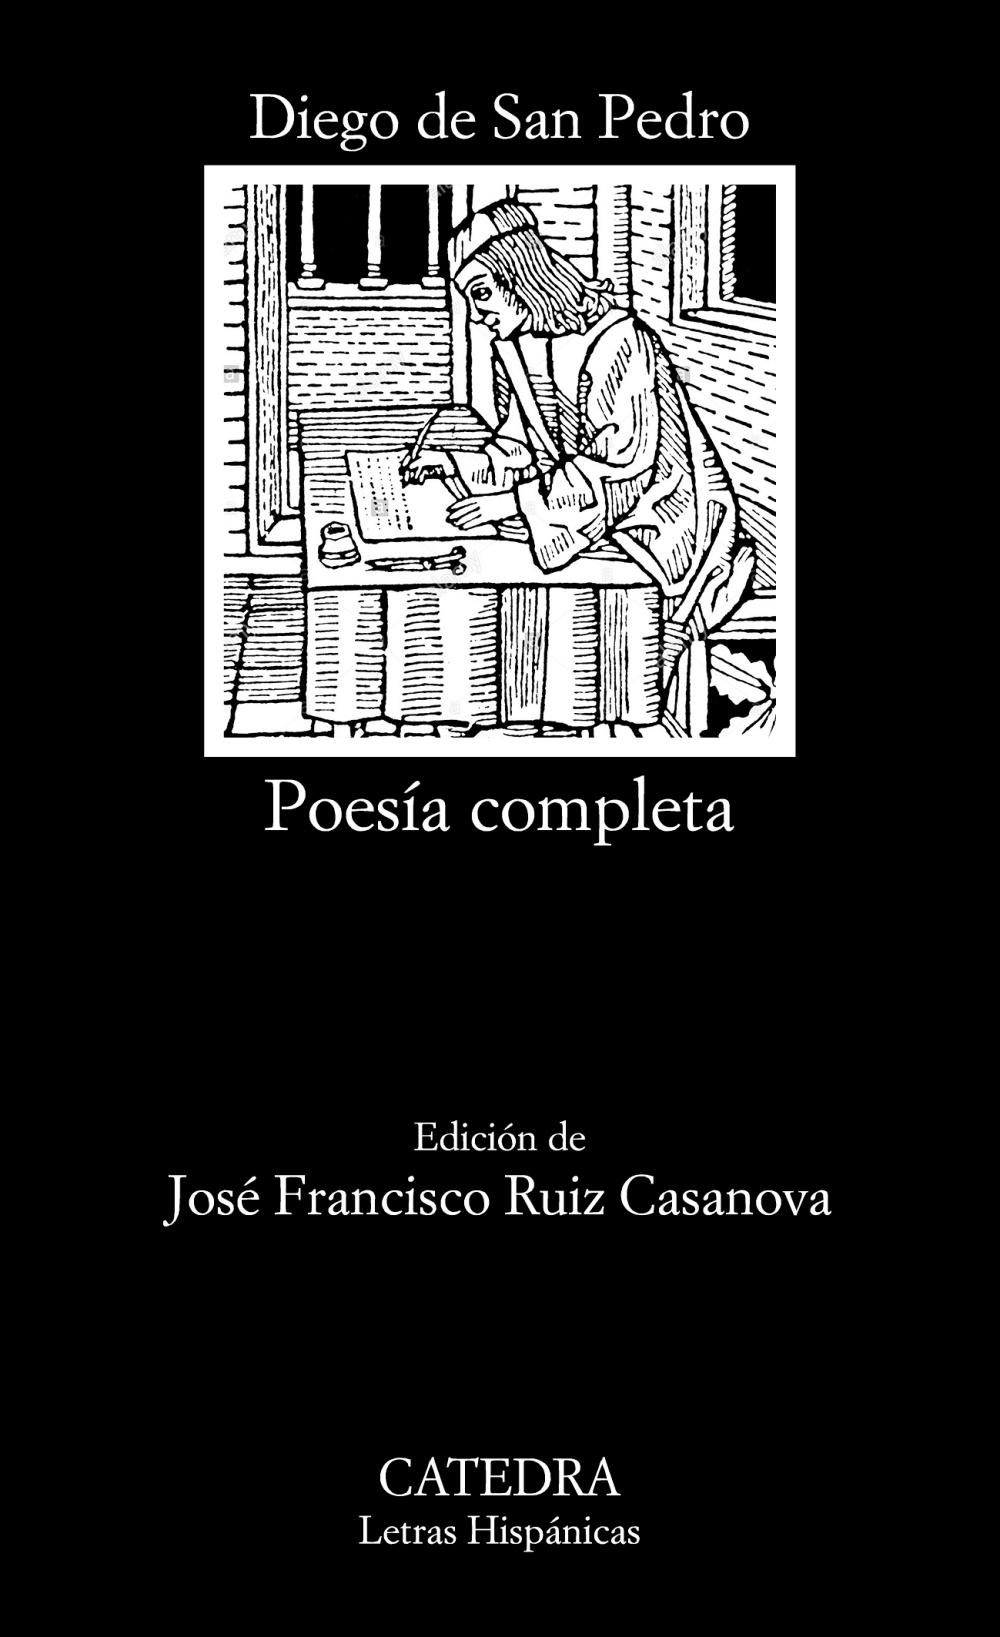 Poesía completa "(Diego de San Pedro)"